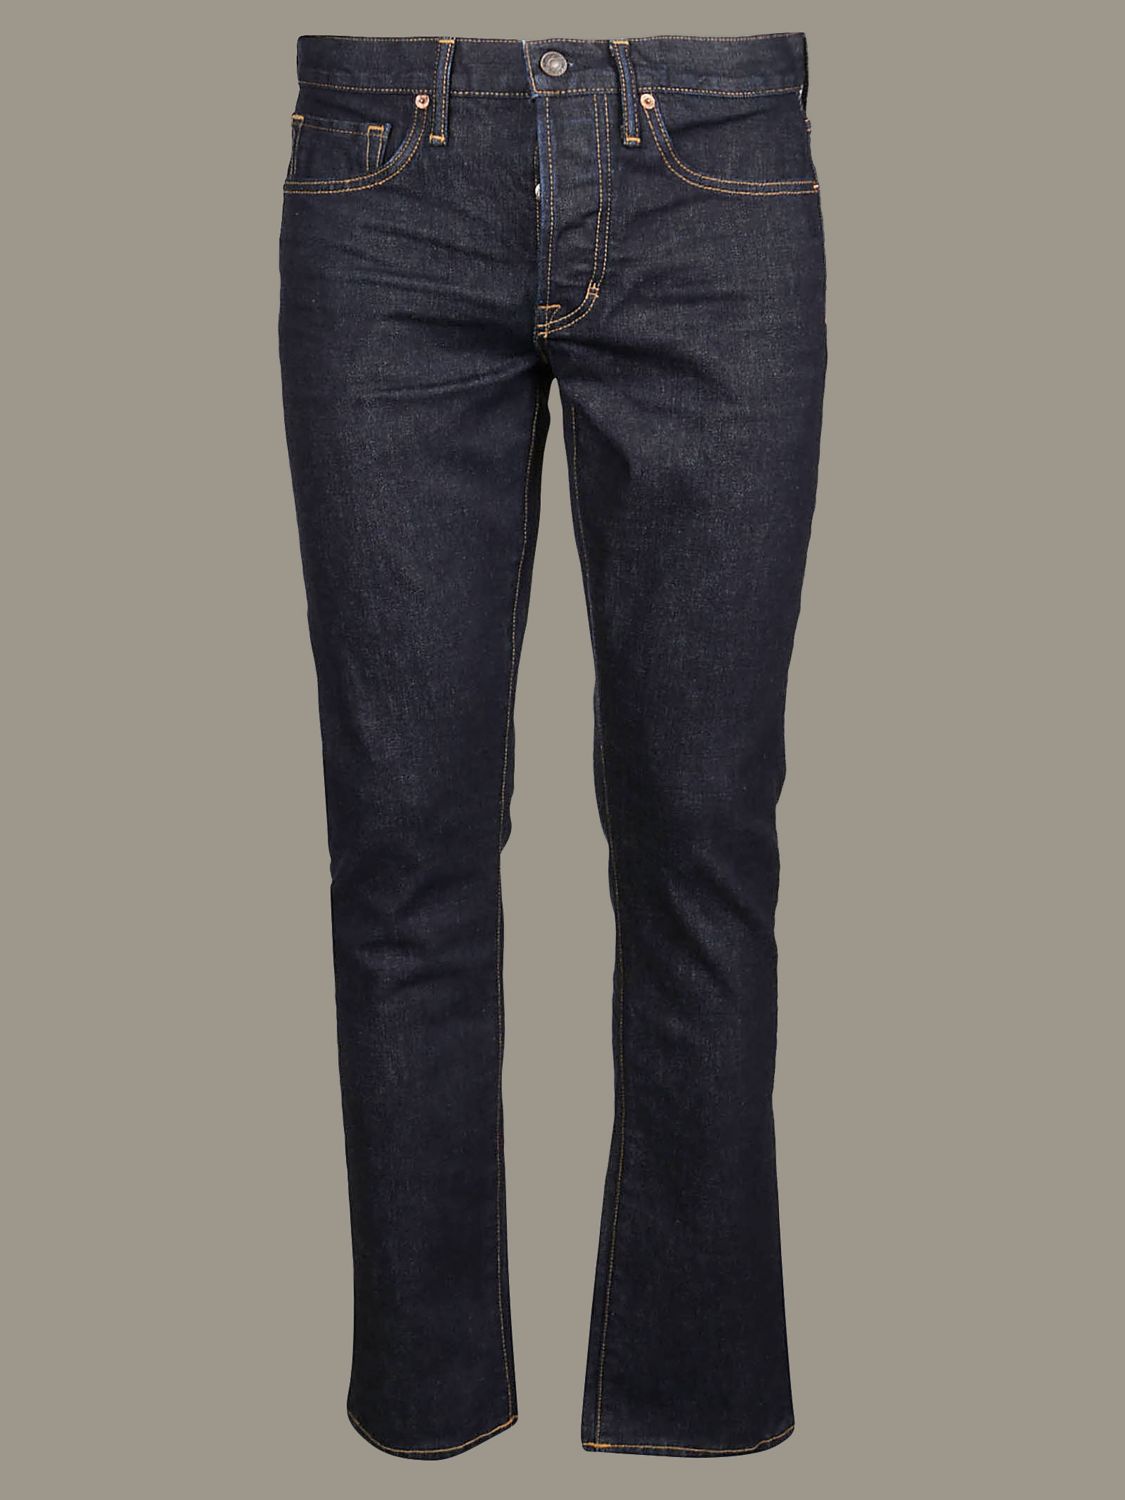 Tom Ford Outlet: jeans in 5-pocket denim - Blue | Tom Ford jeans  TFD001BUJ18 online on 